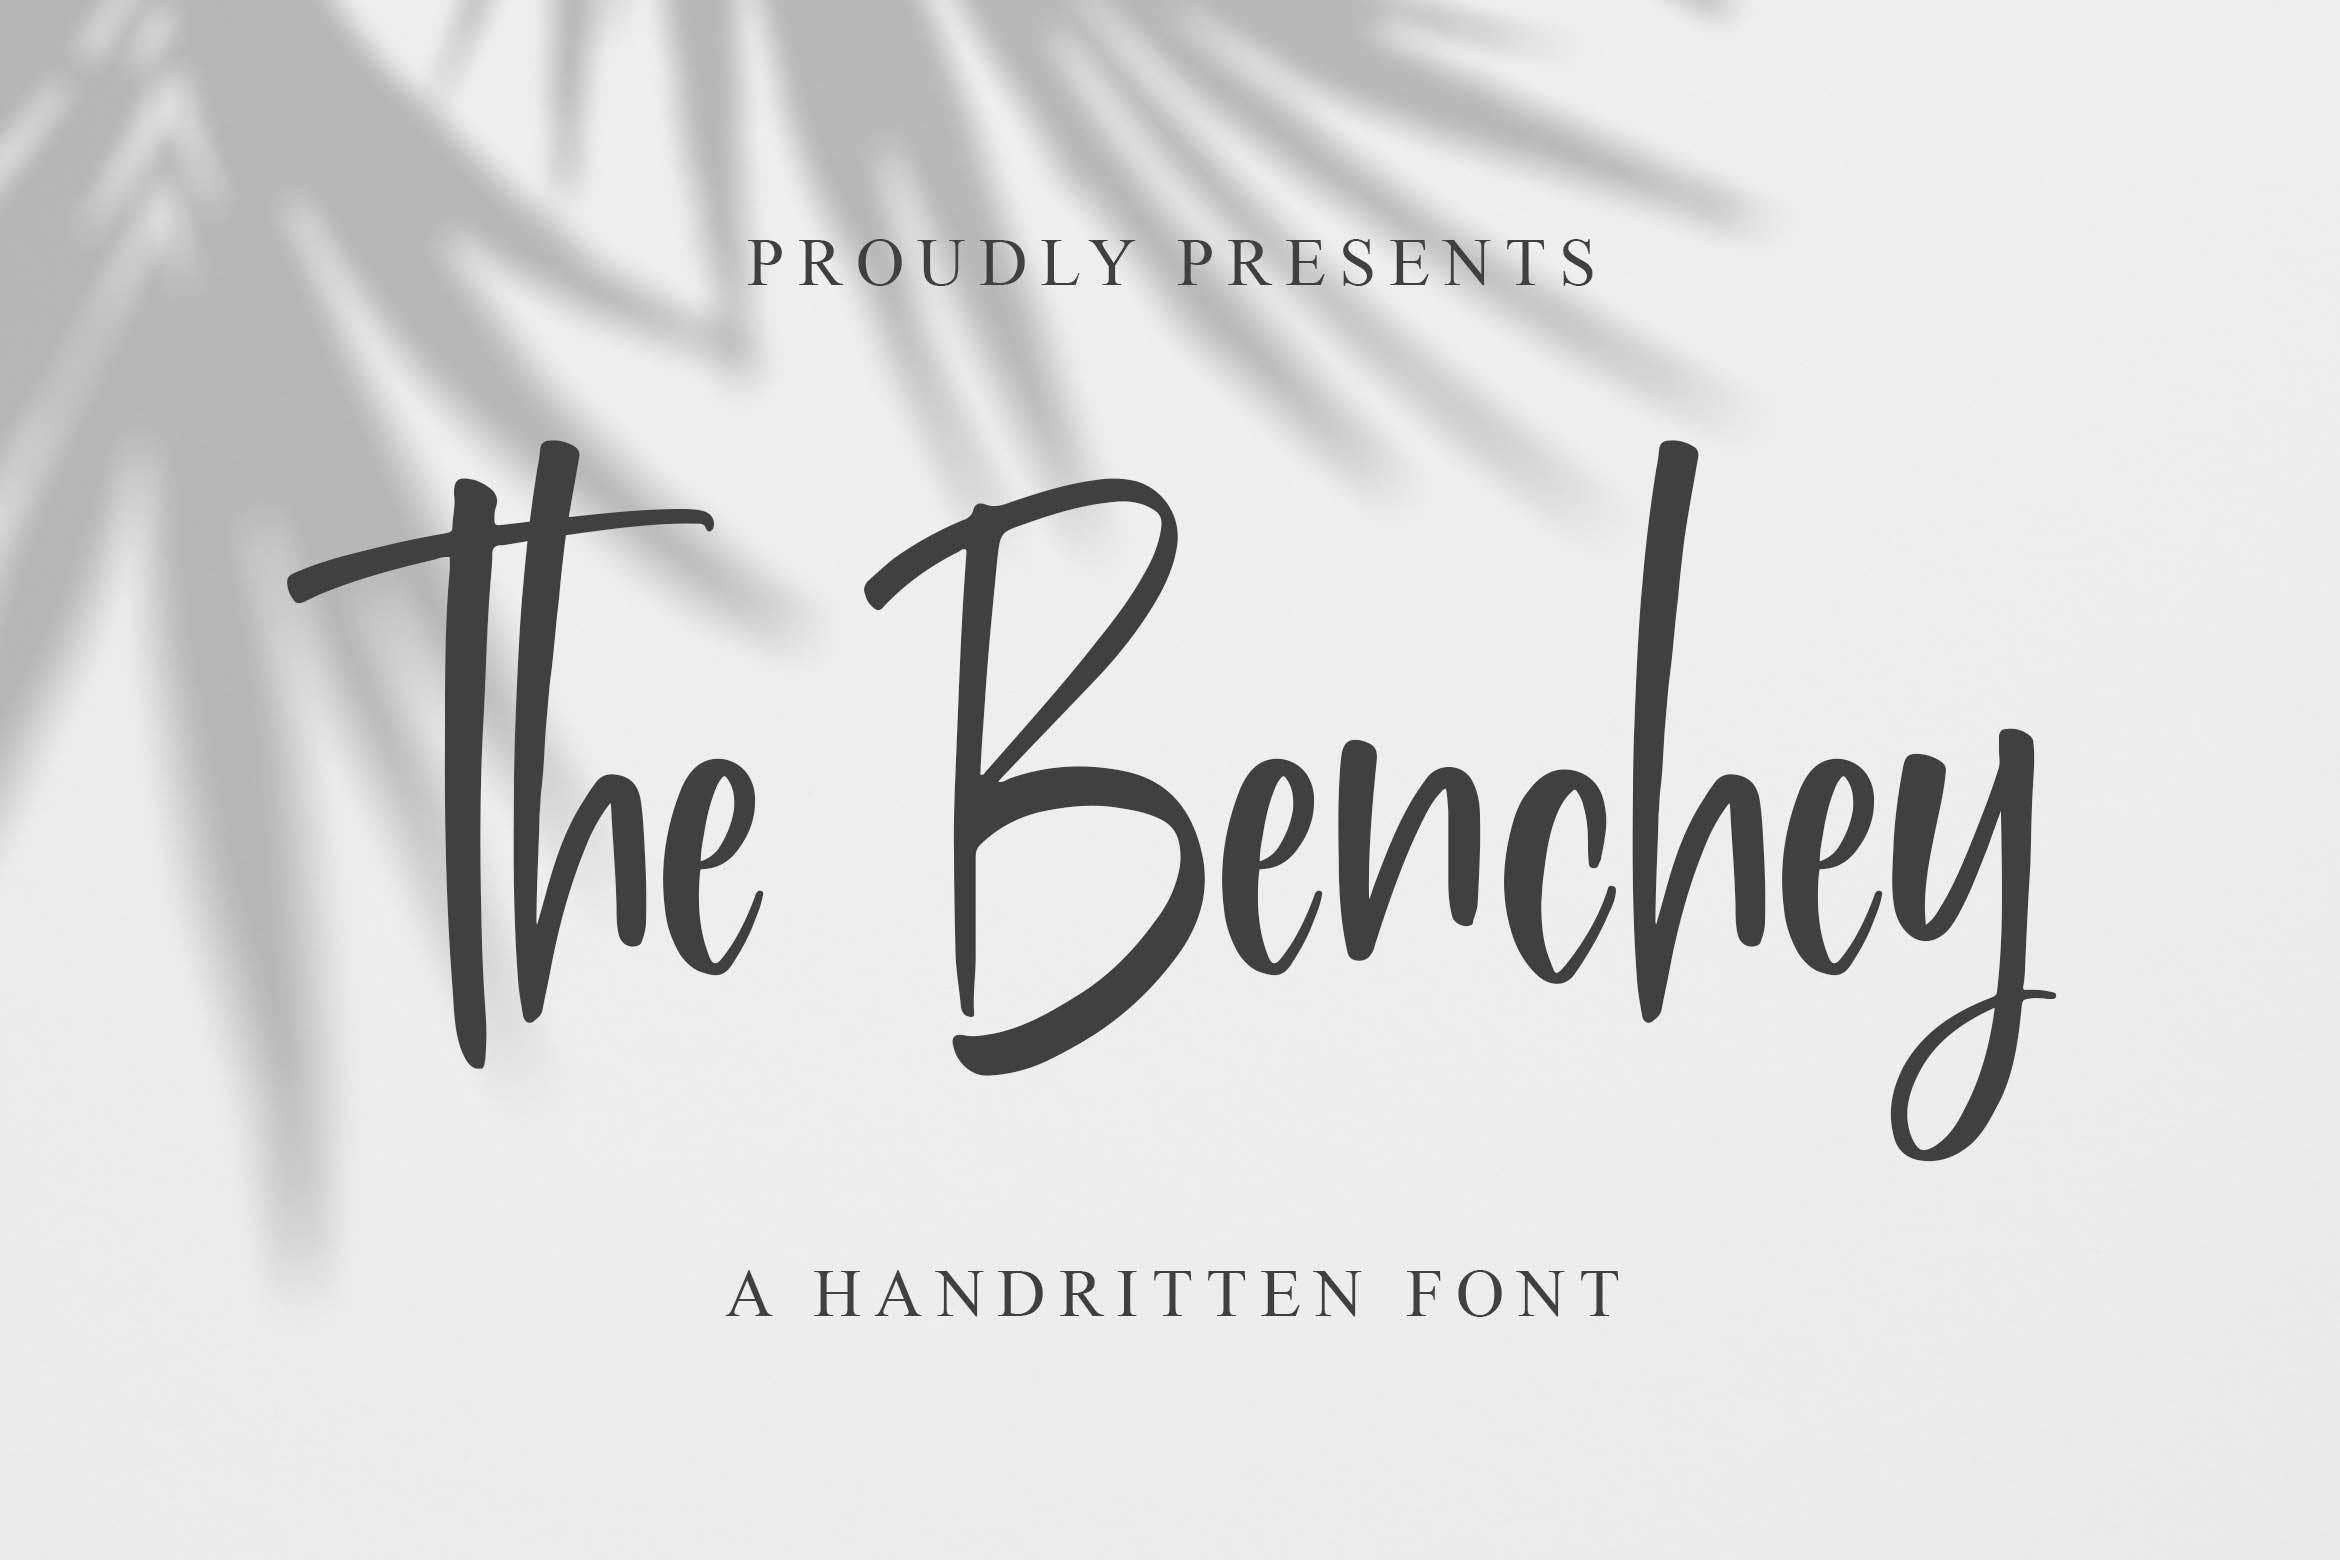 现代书法风格英文手写字体第一素材精选 Benchey – Handwritten Font插图